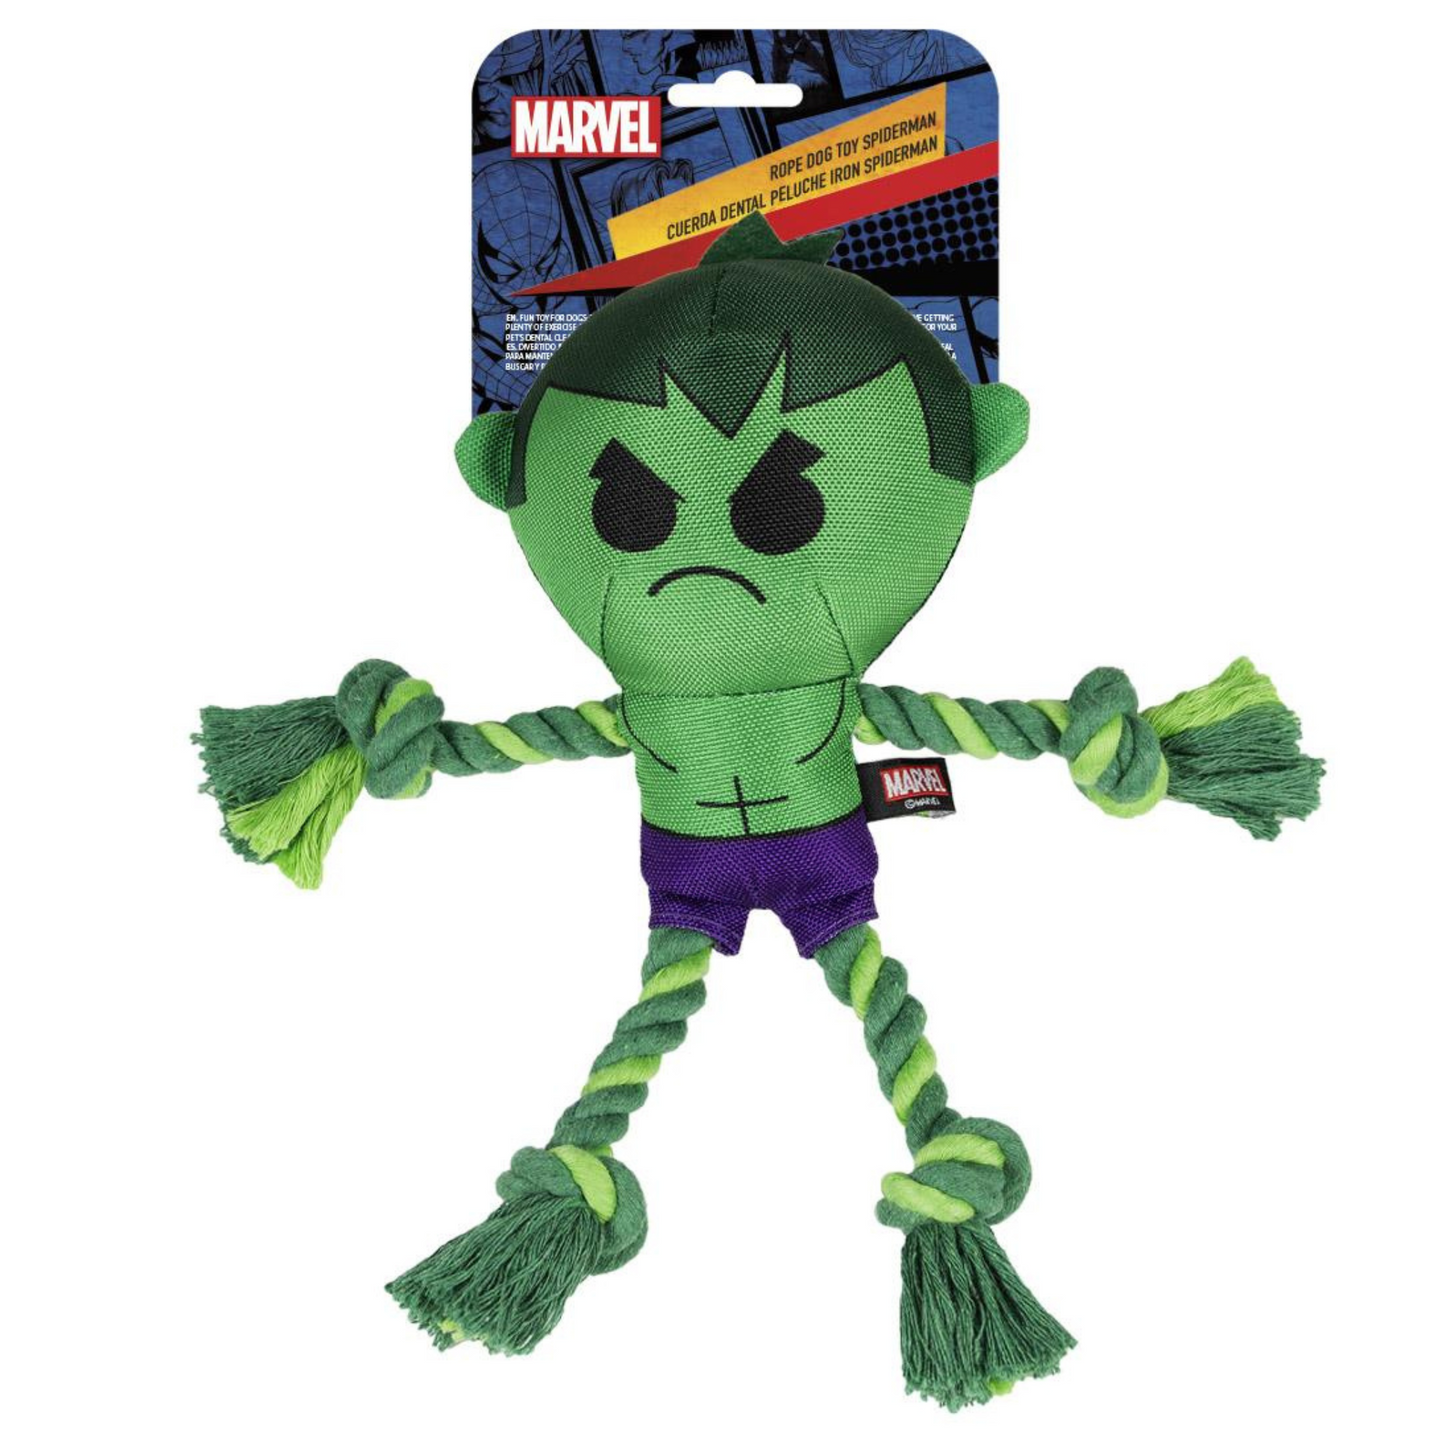 The Hulk Dog Toy